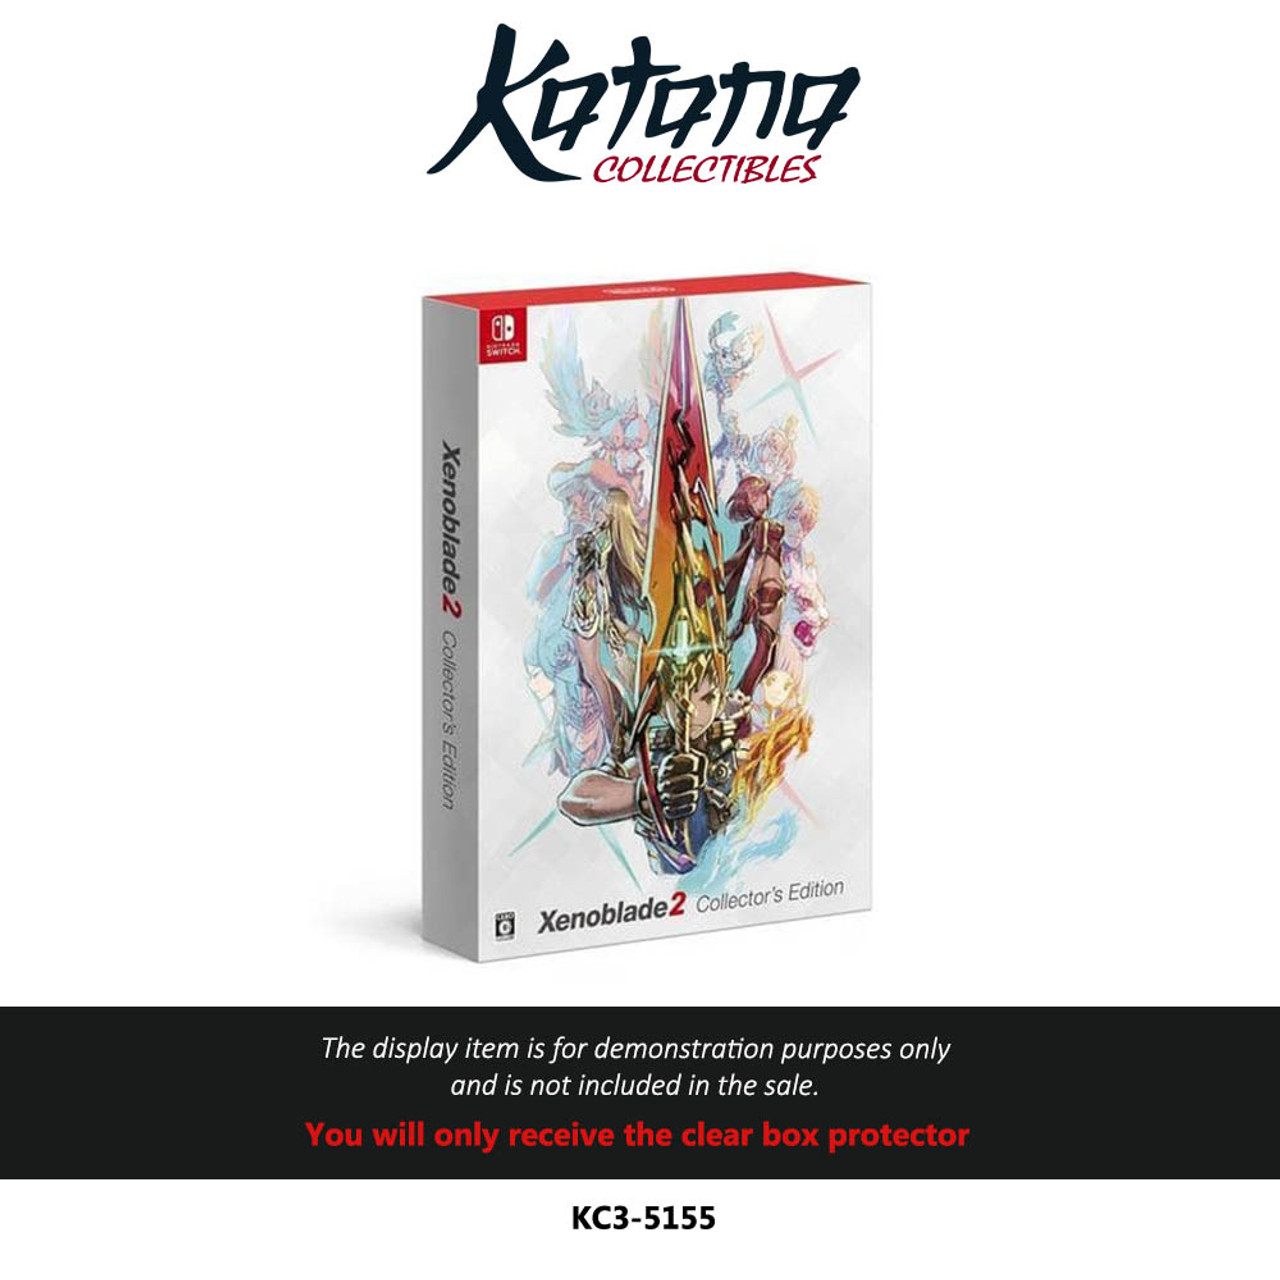 Katana Collectibles Protector For Xenoblade 2 Collectors Edition - Japan Region - Nintendo - 2017